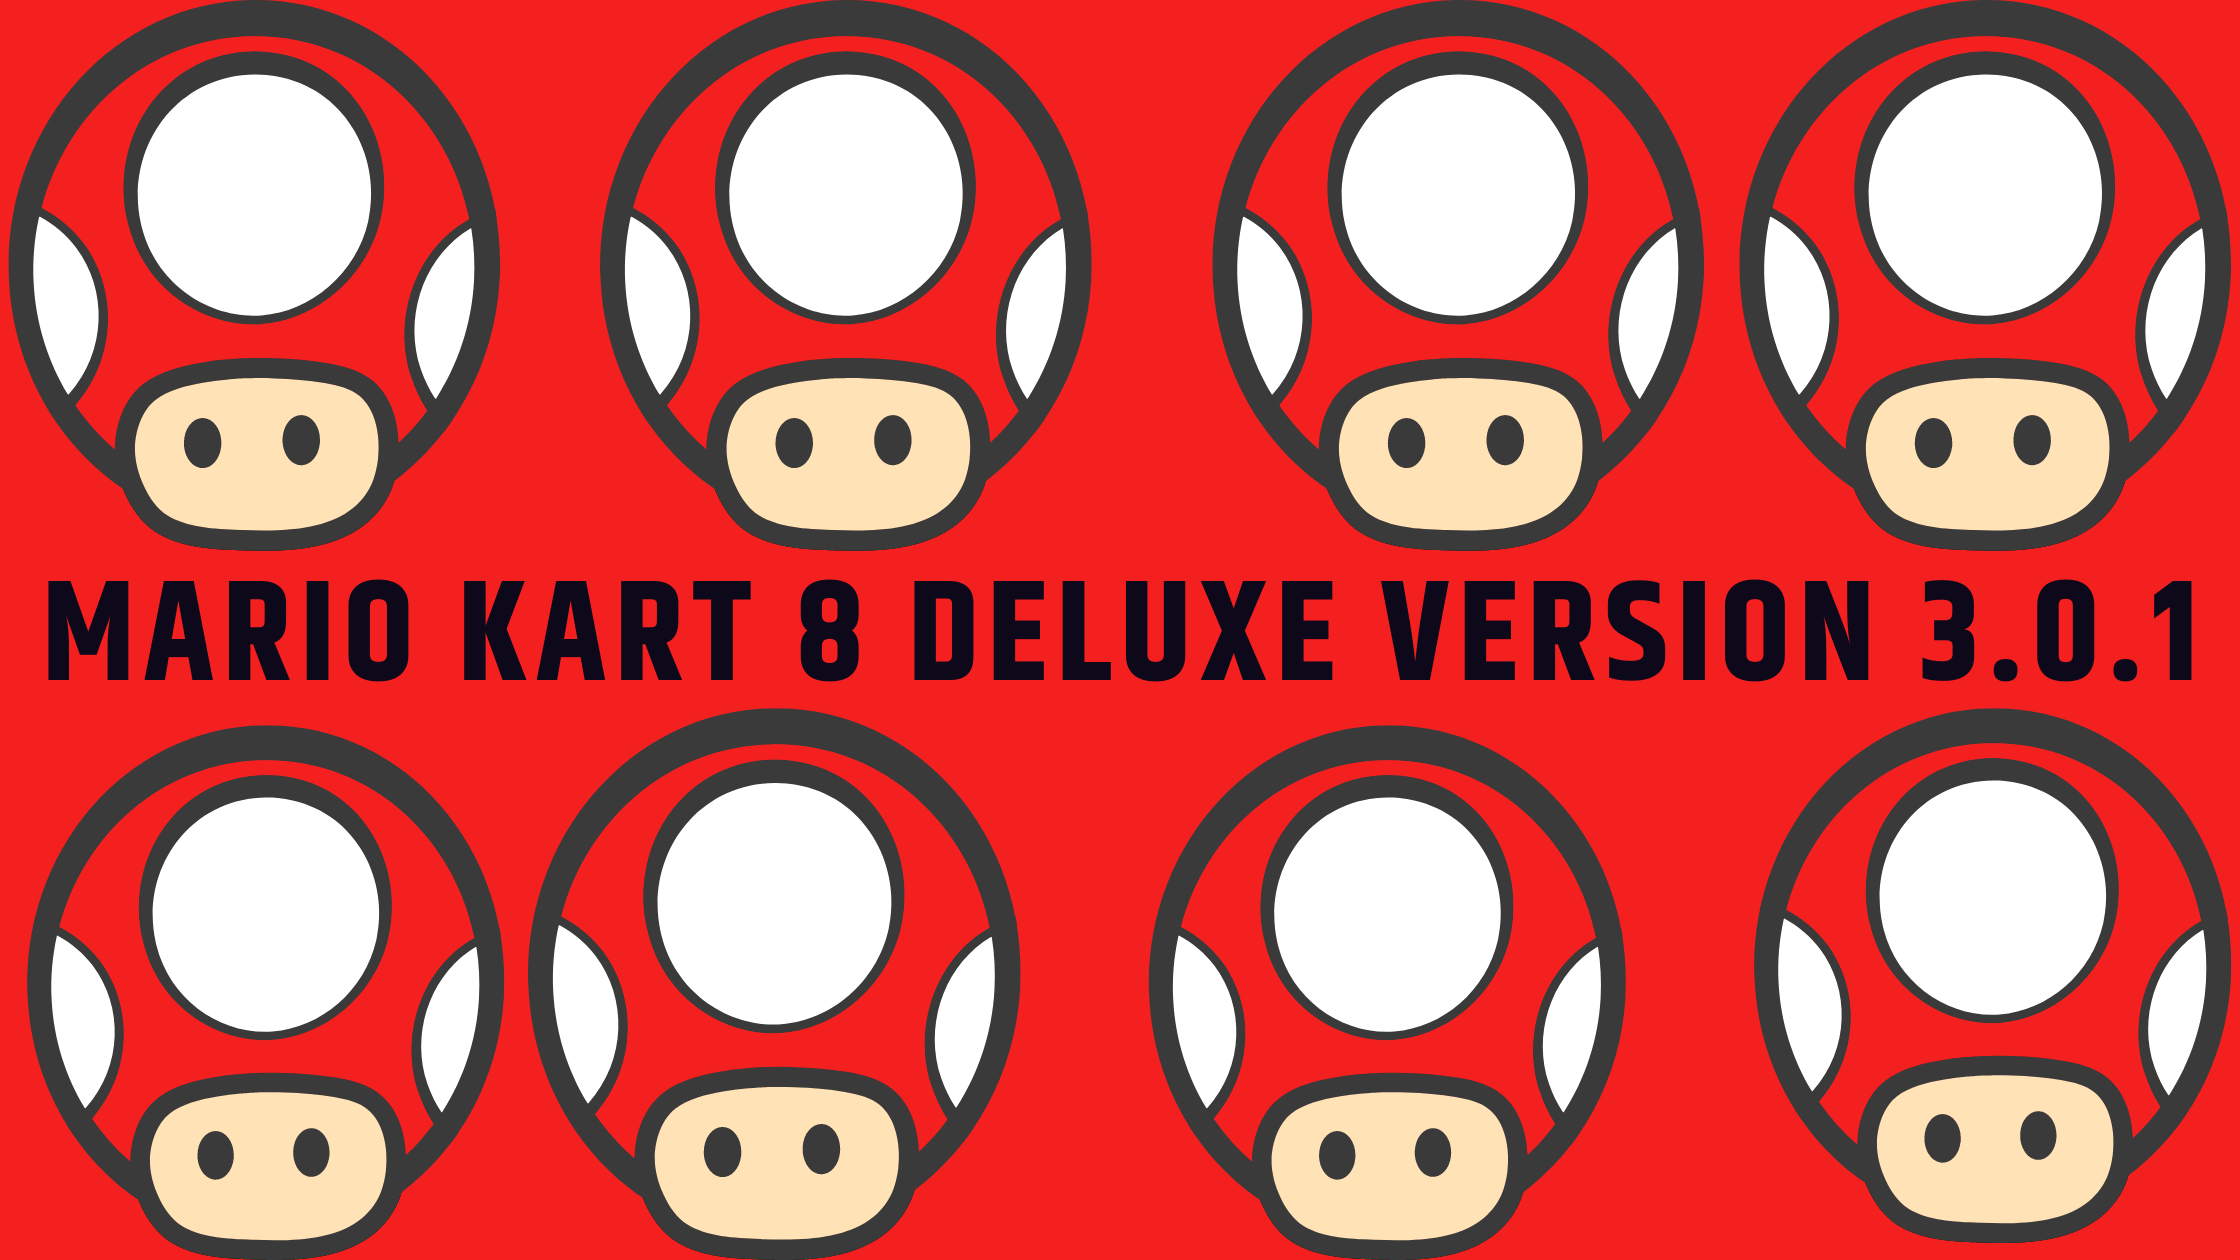 Mario Kart 8 Deluxe Version 3.0.1